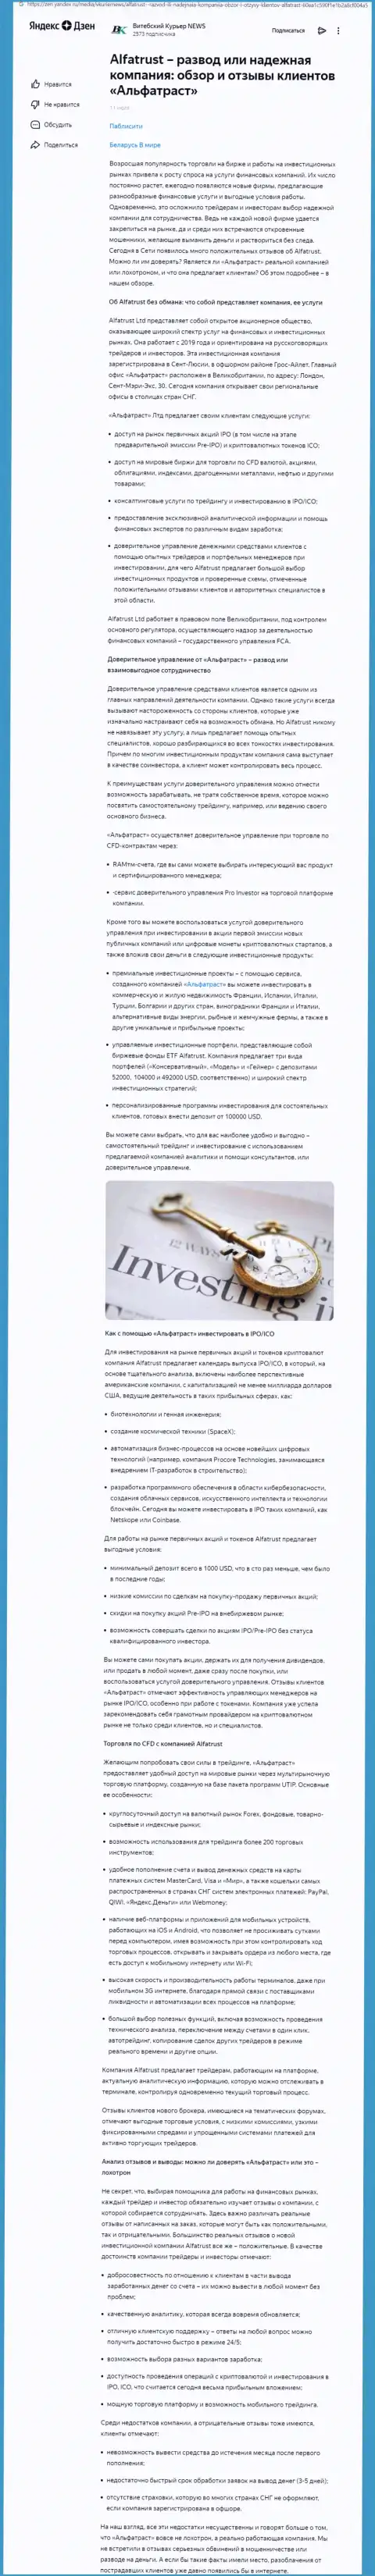 Обзор портала Зен Яндекс Ру об Форекс компании Альфа Траст